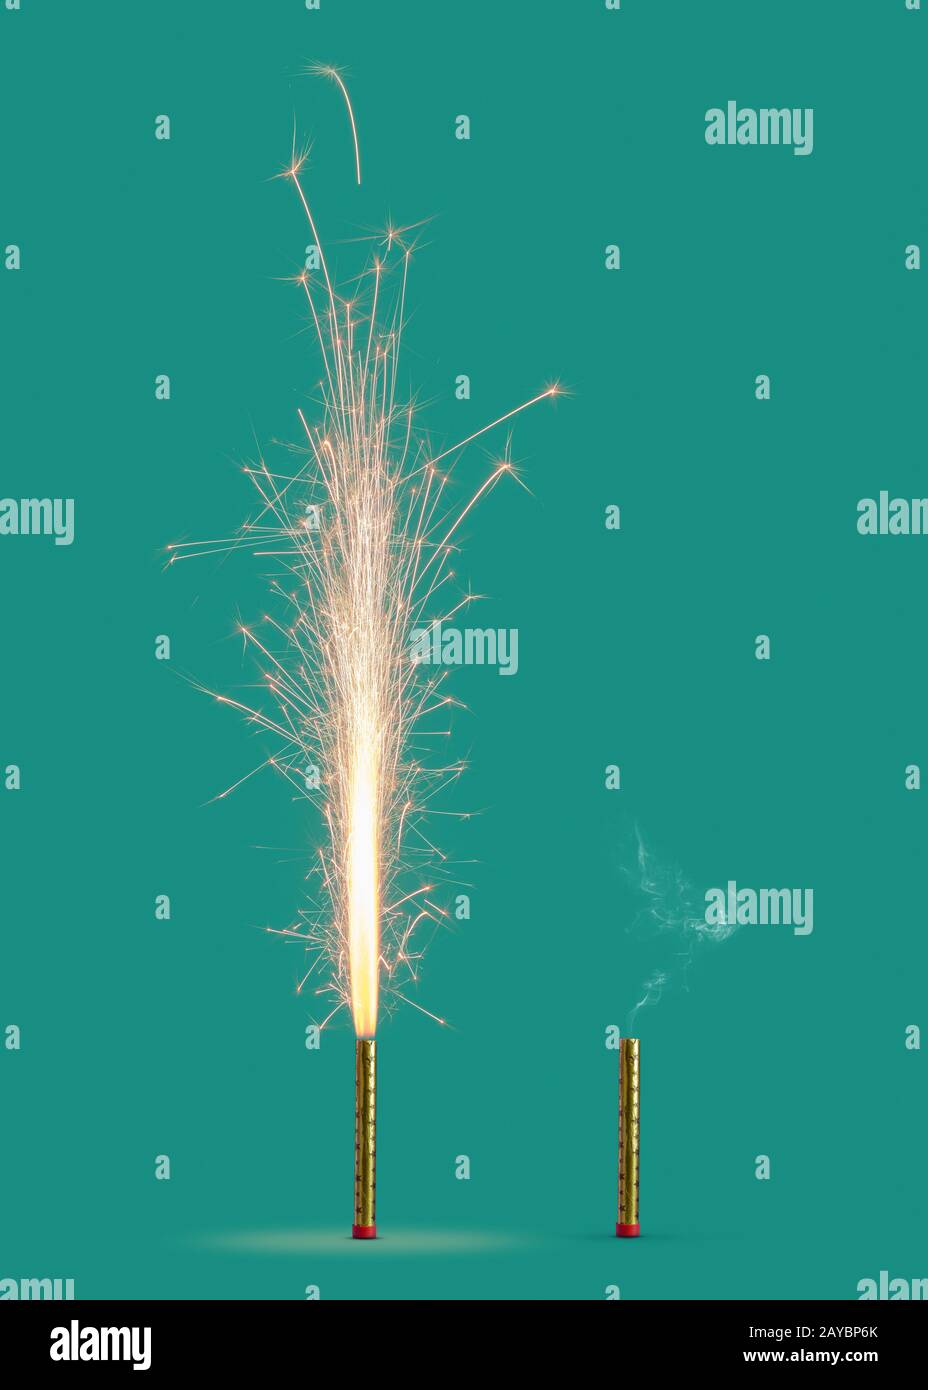 Zwei Feuerwerke brannten und brannten auf türkisfarbenem Hintergrund. Stockfoto